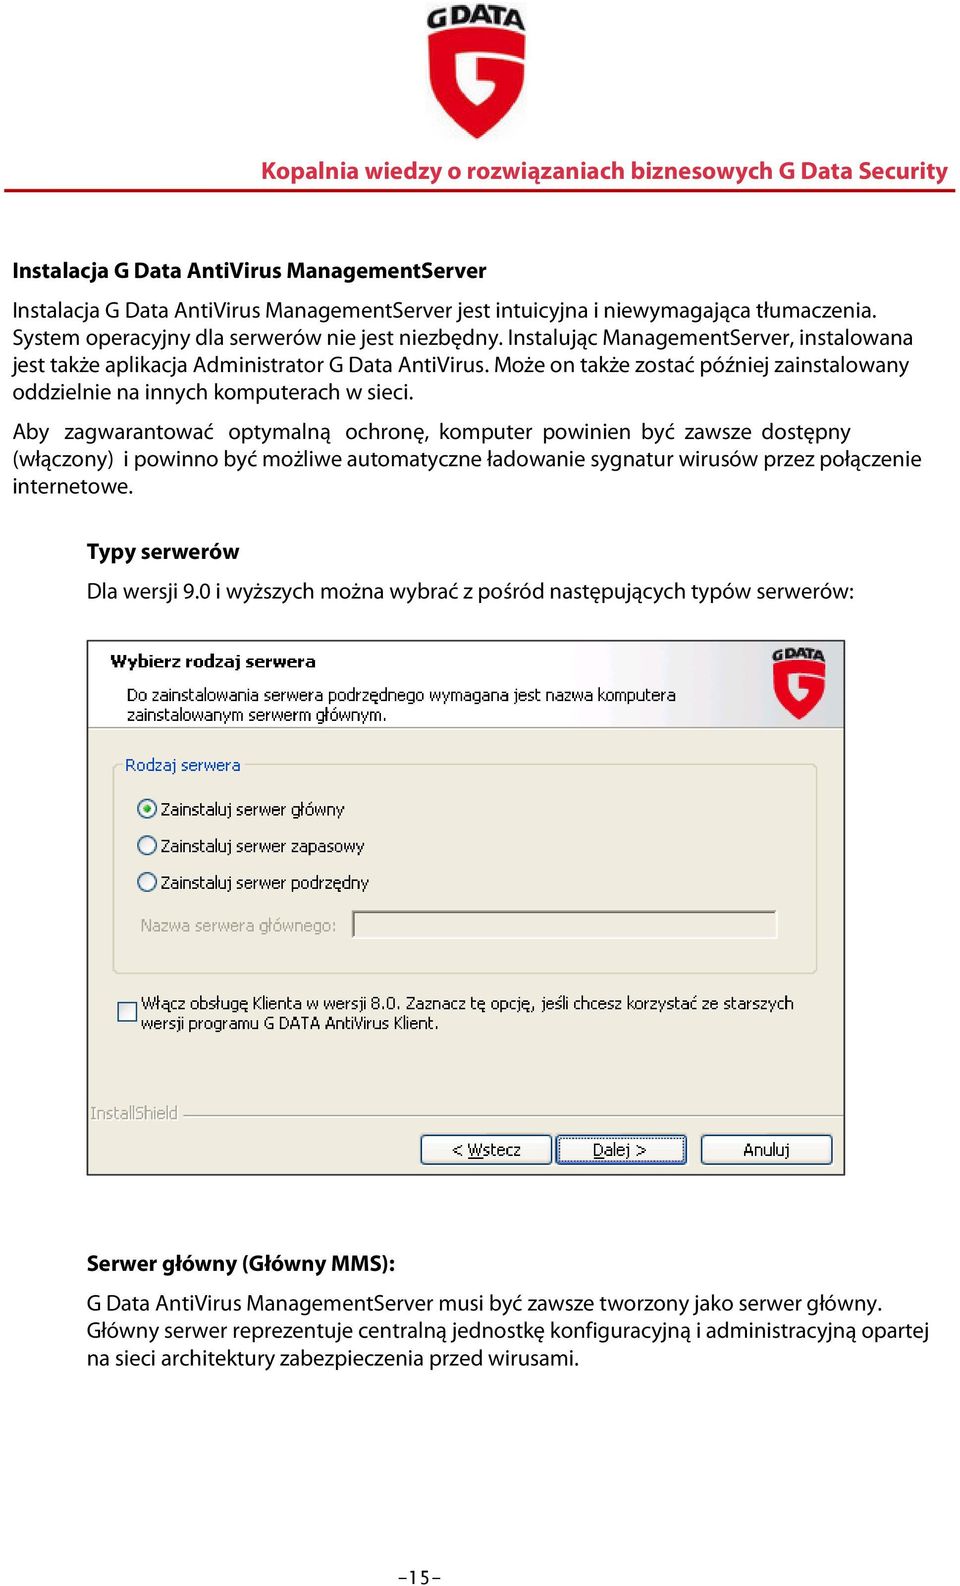 Aby zagwarantować optymalną ochronę, komputer powinien być zawsze dostępny (włączony) i powinno być możliwe automatyczne ładowanie sygnatur wirusów przez połączenie internetowe.